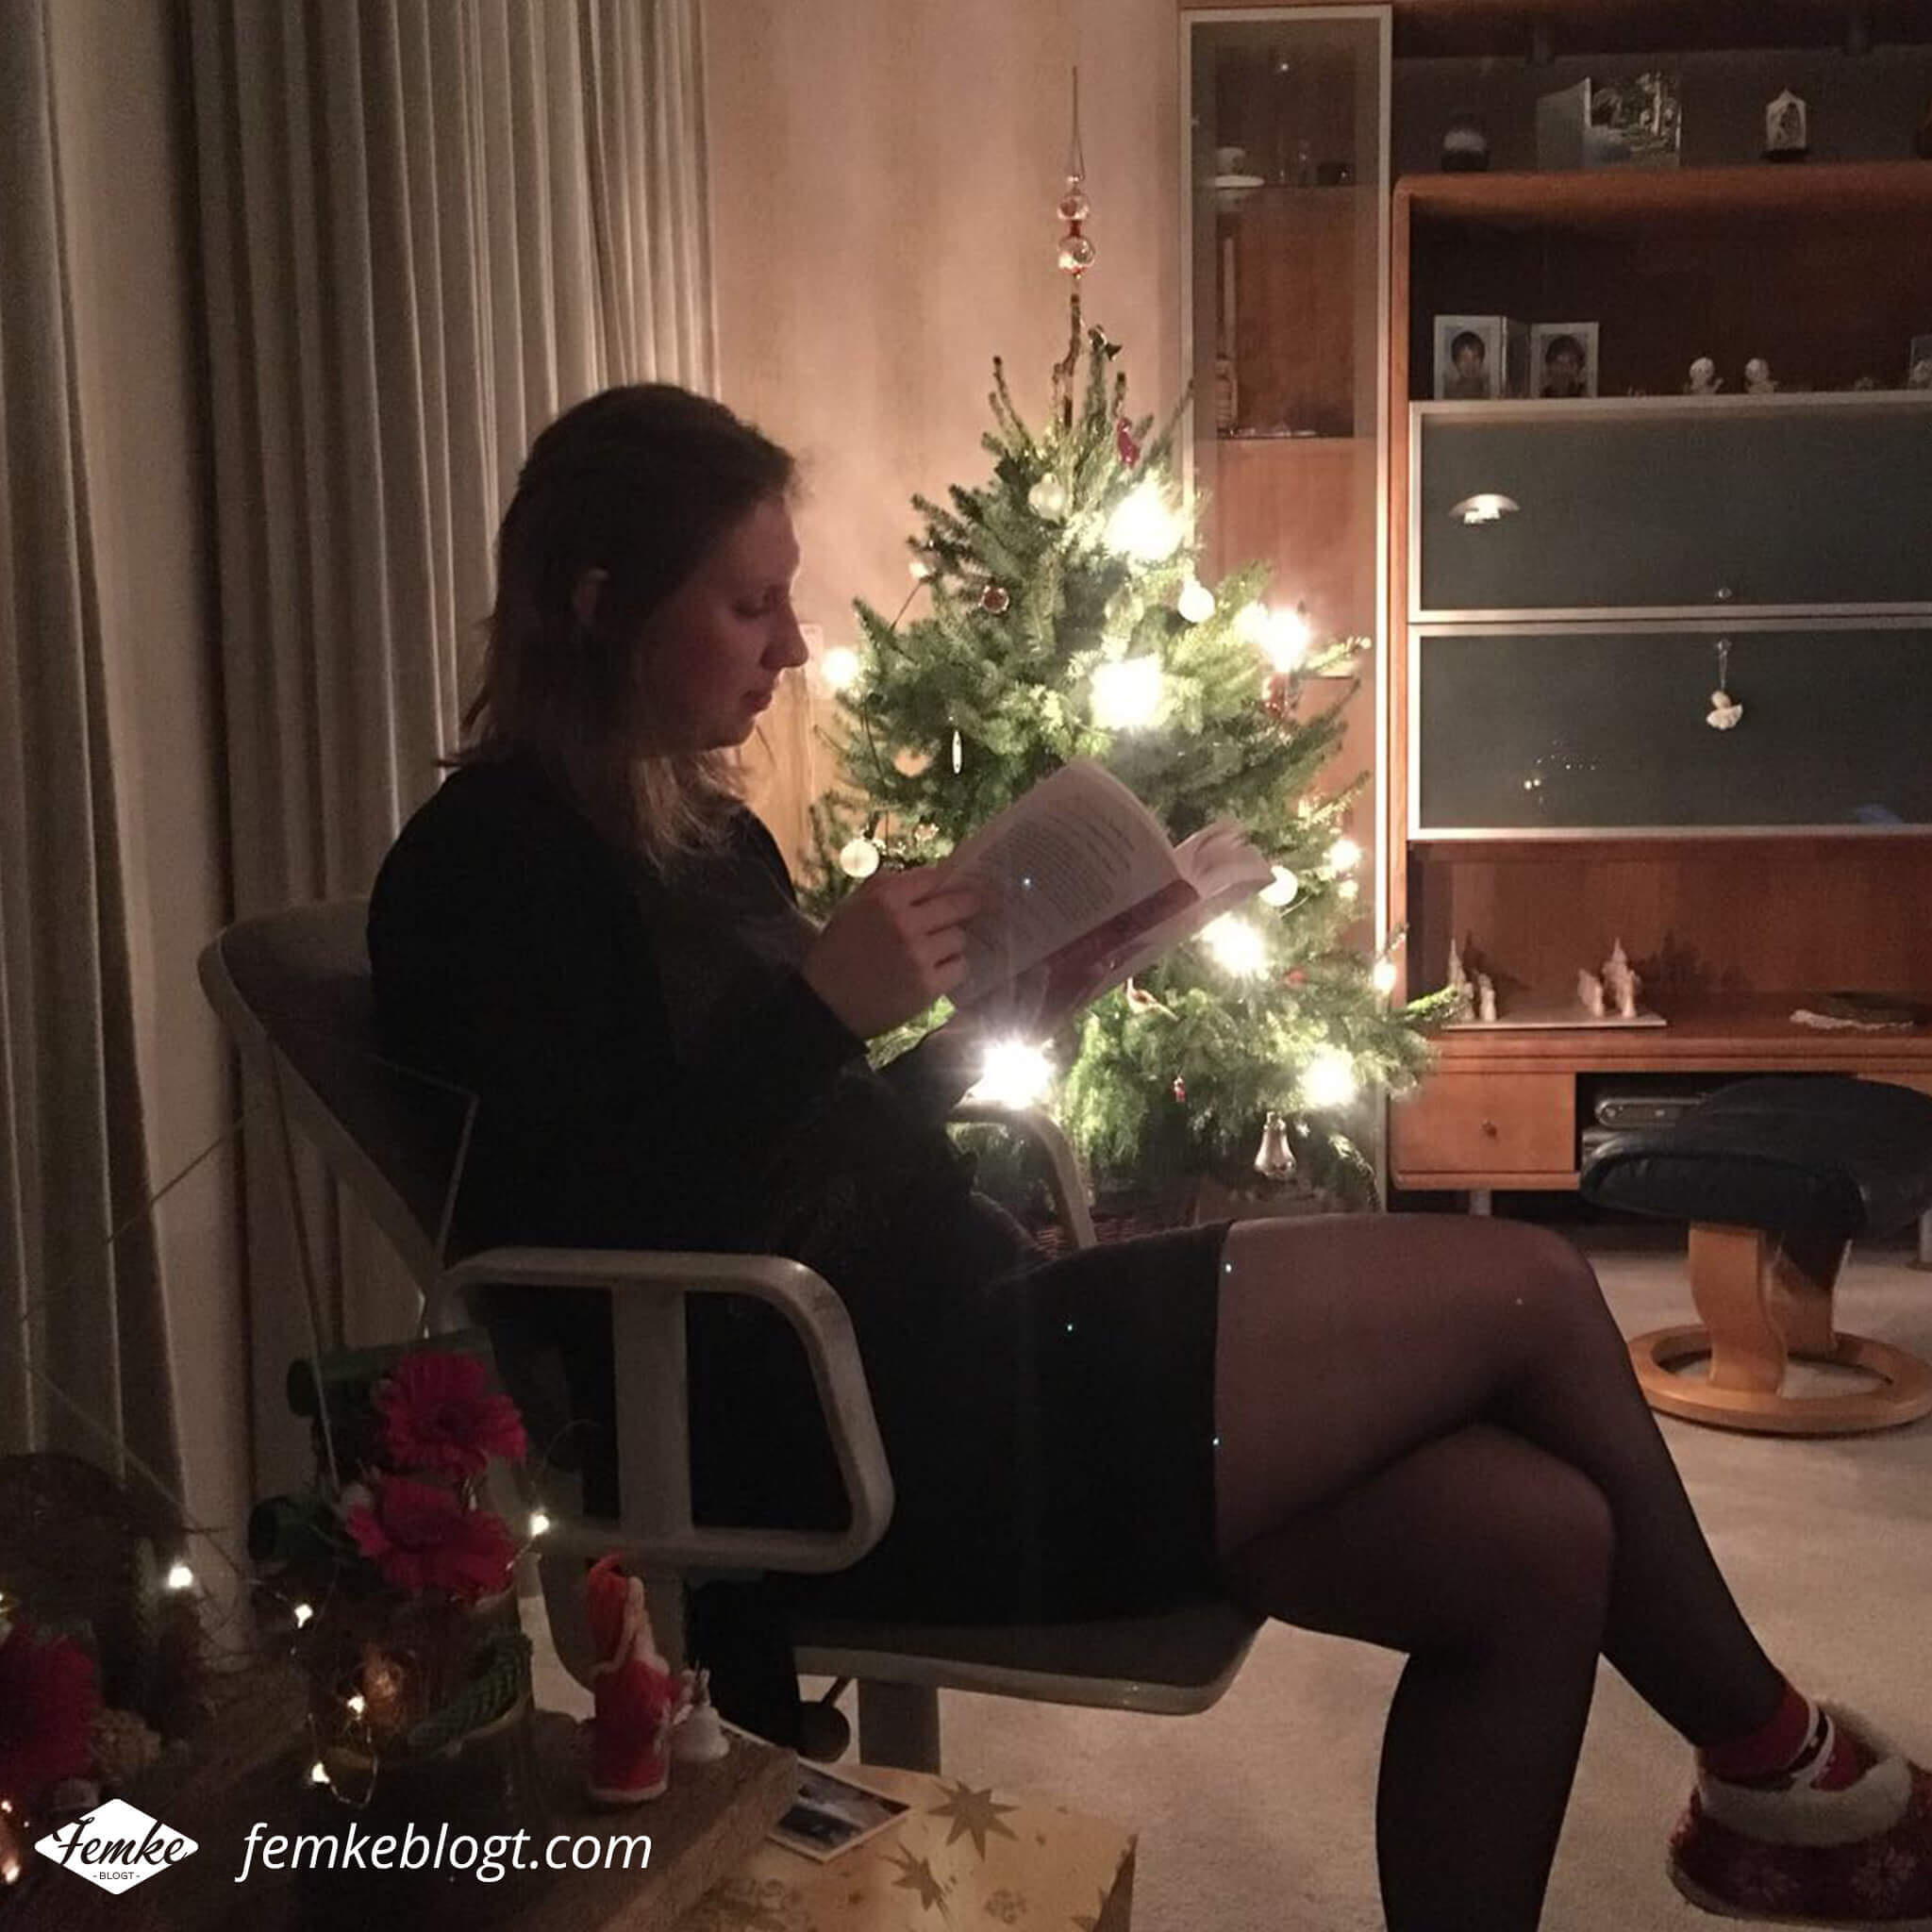 Maandoverzicht december | Lekker lezen met kerst bij het licht van de kerstboom